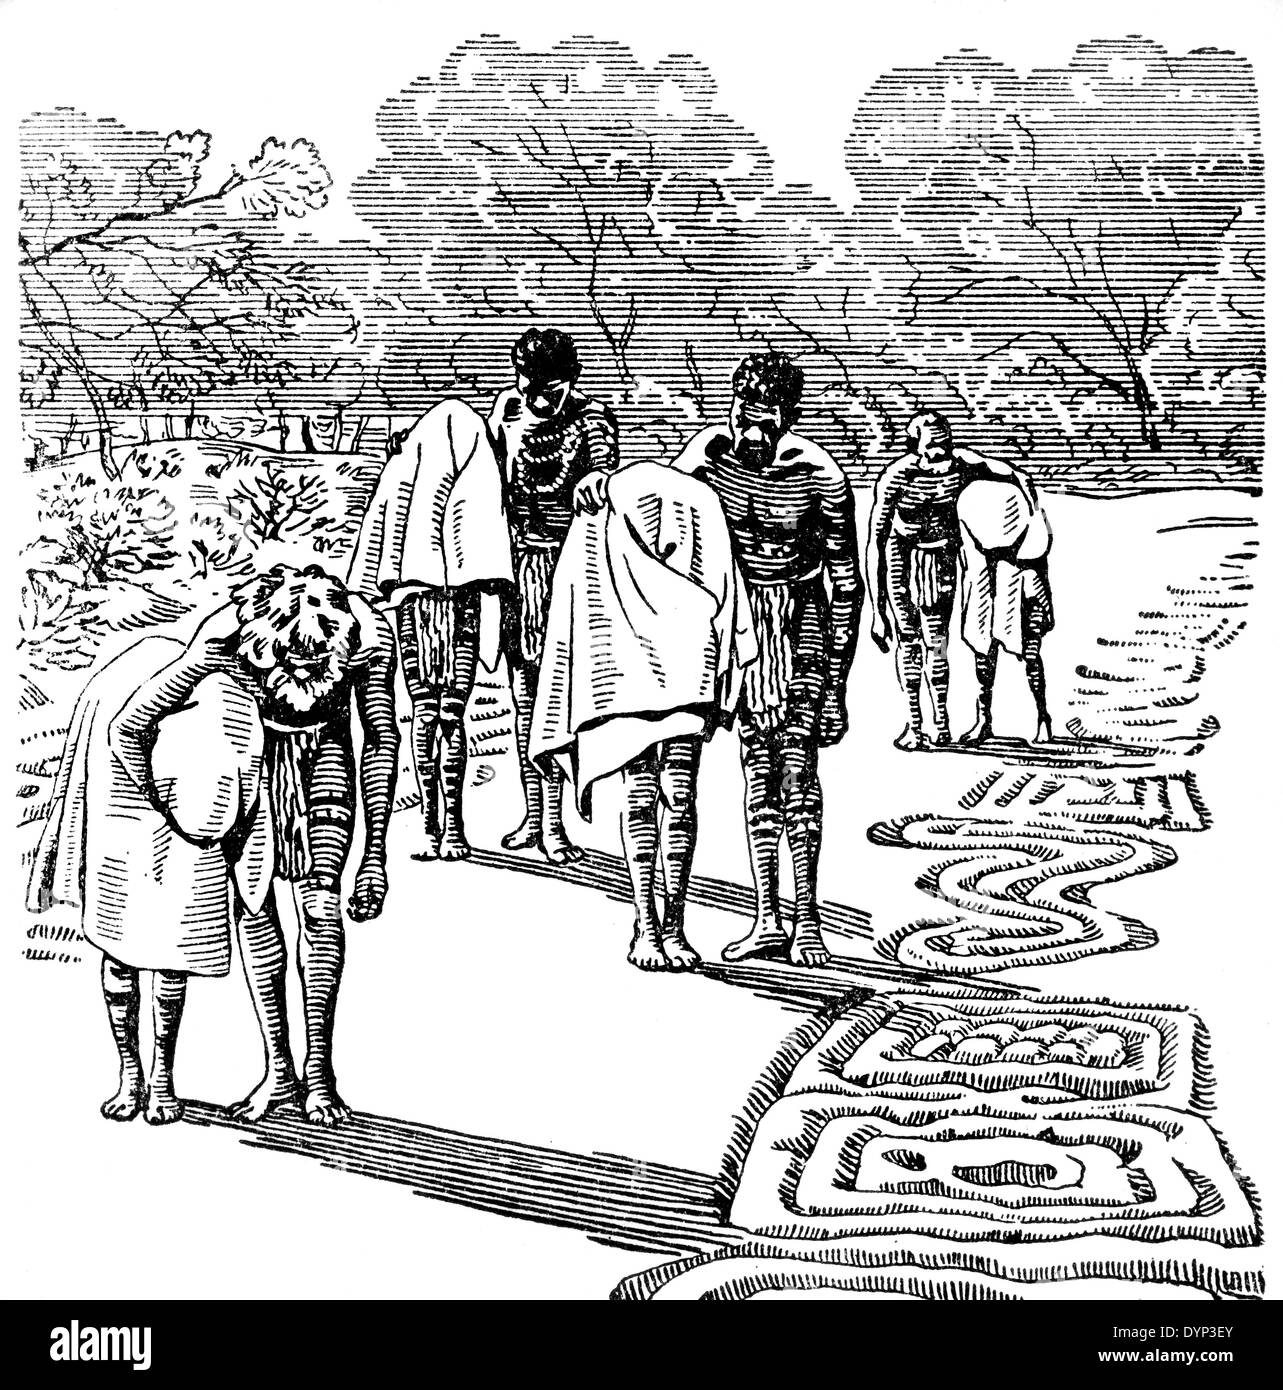 Cérémonie d'initiation au Bora la culture des aborigènes d'Australie, de l'illustration de l'Encyclopédie Soviétique, 1926 Banque D'Images